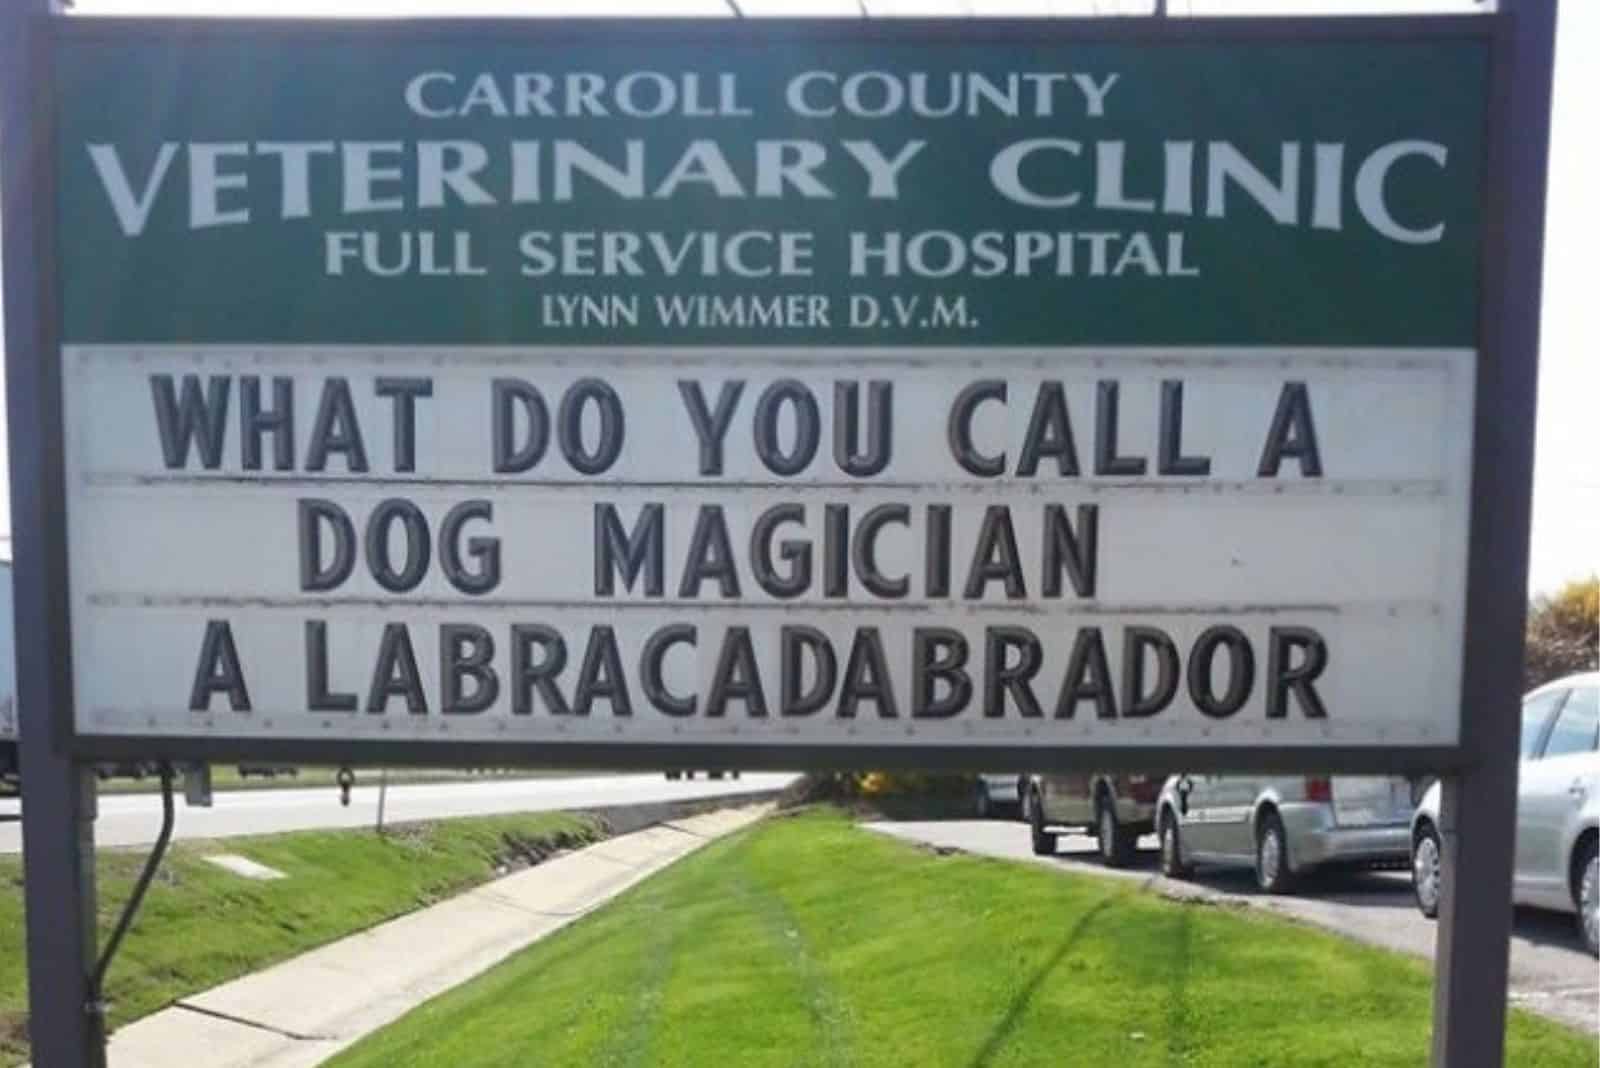 funny joke on vet clinic sign